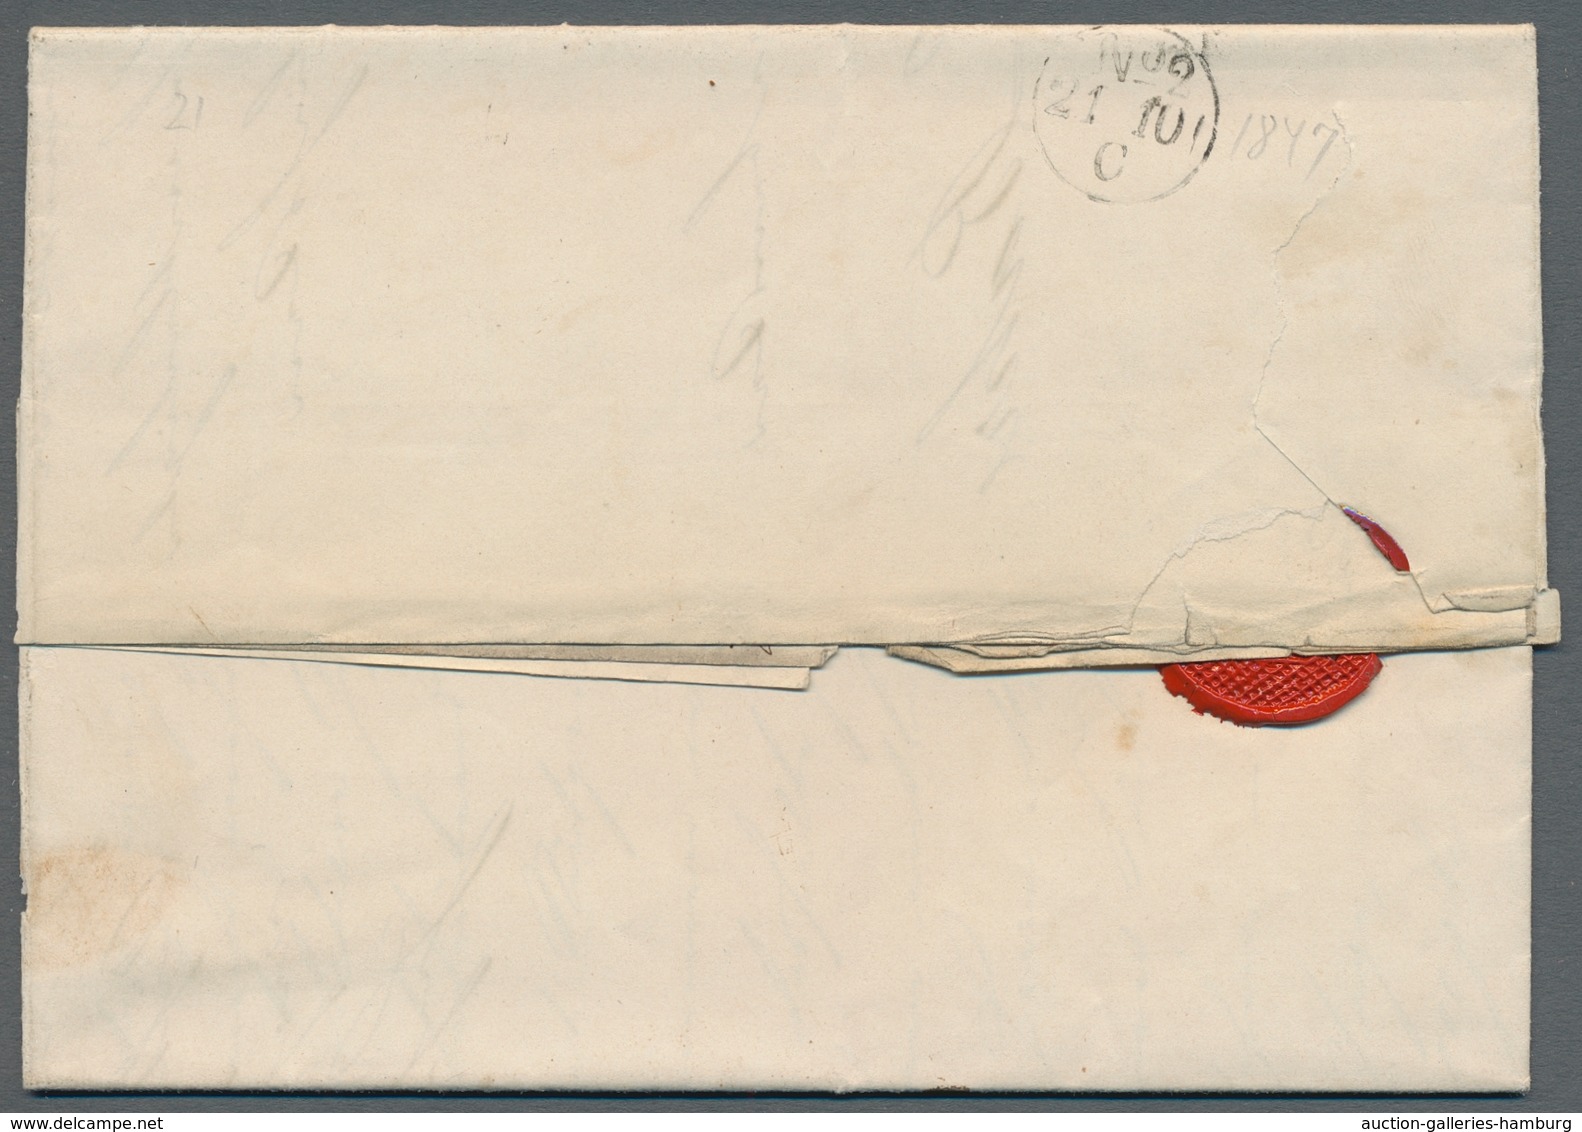 Hamburg - Marken und Briefe: 1821-1865, Partie mit 5 Vorphilabriefen, davon 2 vom Thurn und Taxische